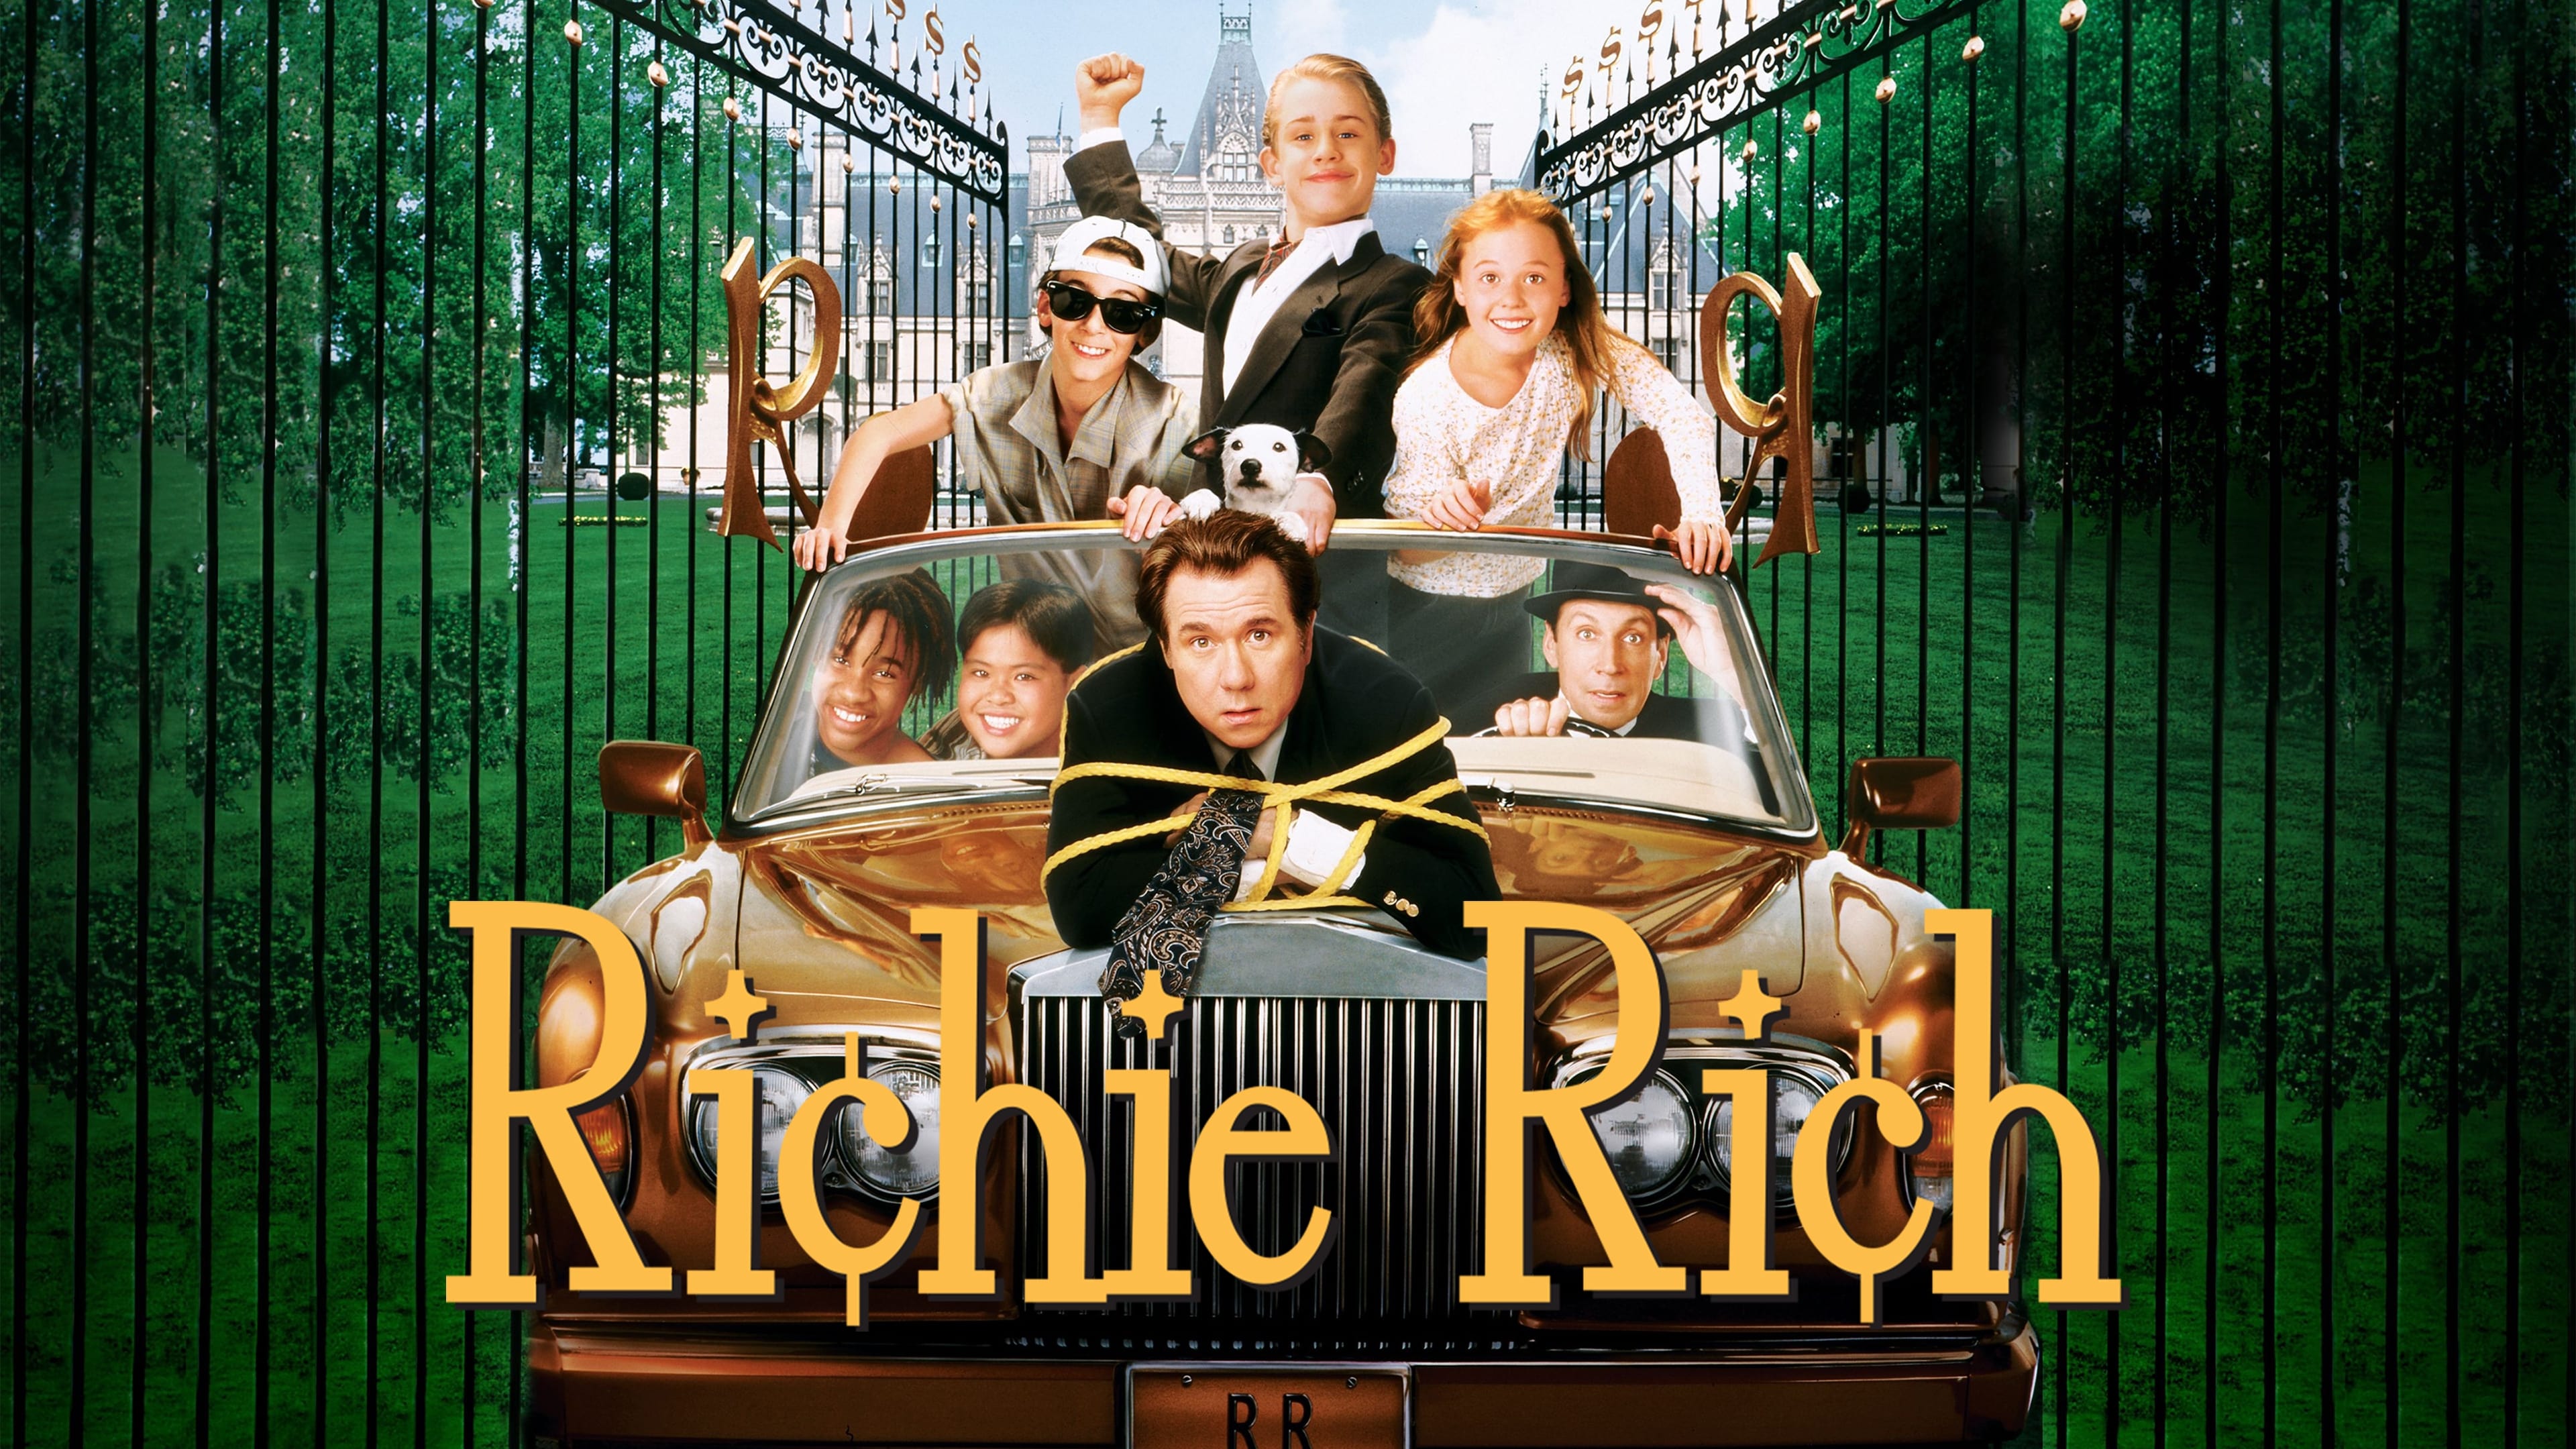 Ричи Рич (1994)